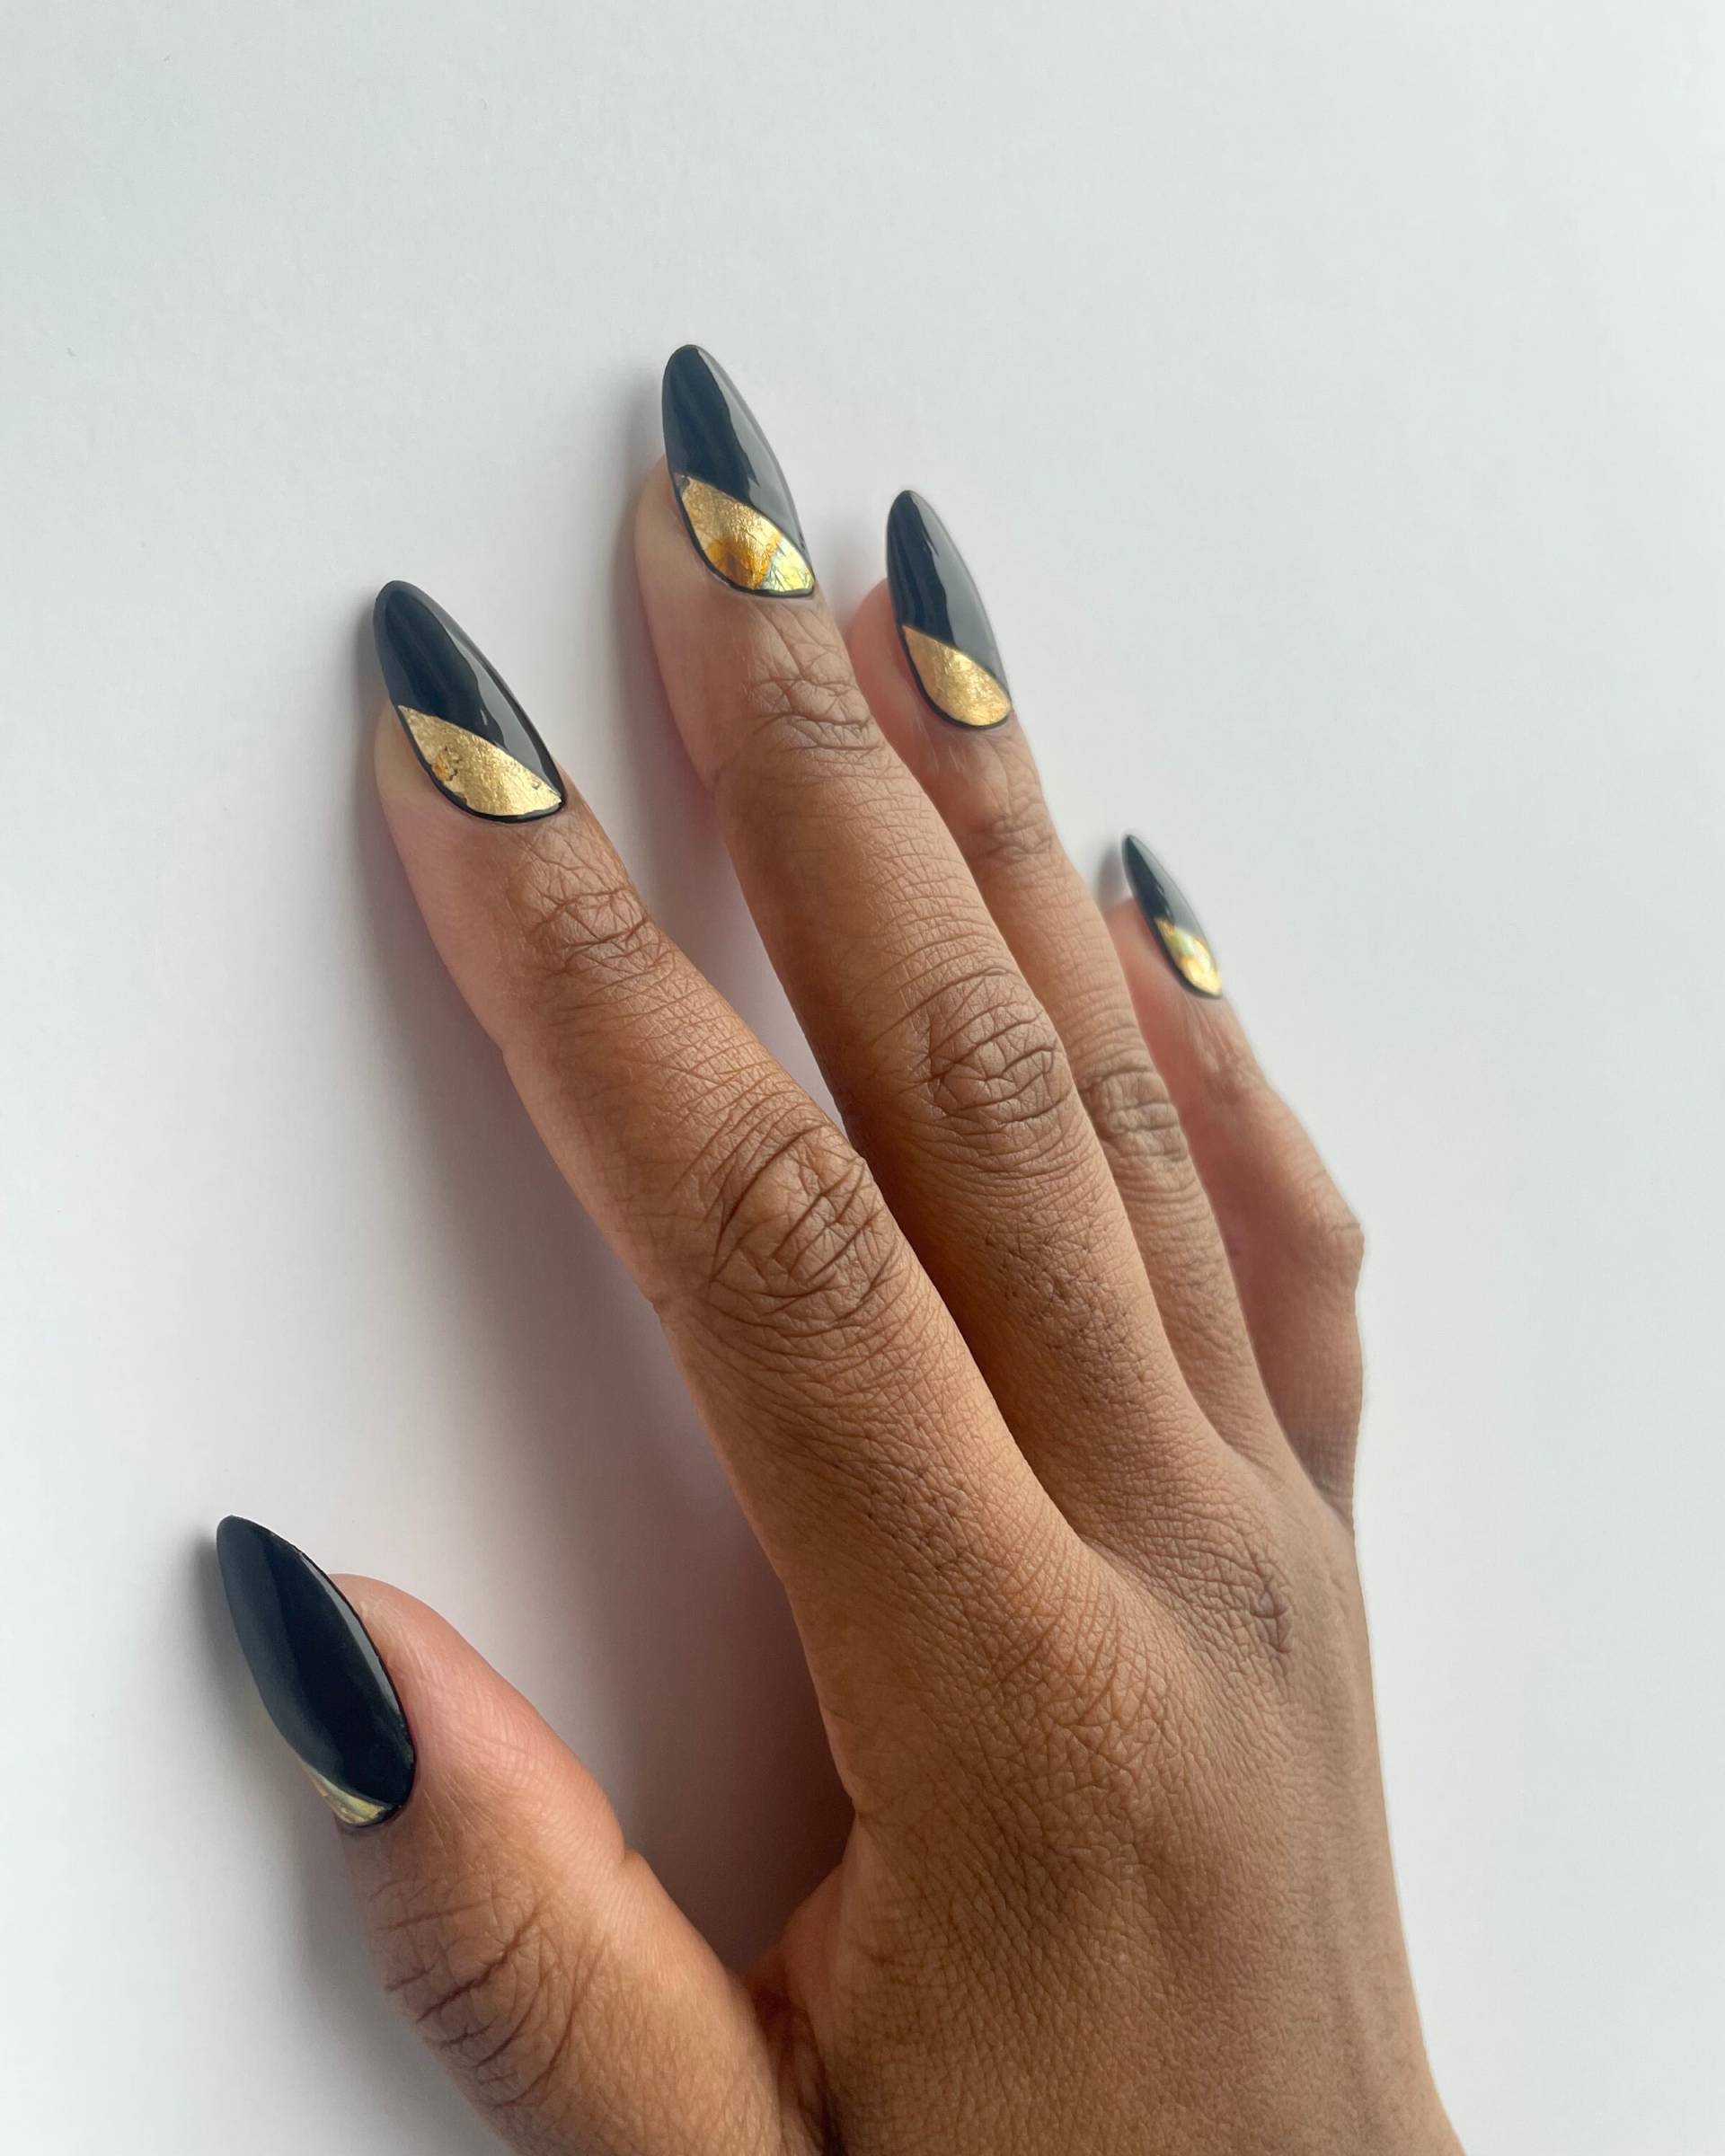 Schwarze Und Goldene Nägel/Luxusnägel Leimnägel Fake Nails von PressedbyjojoShop